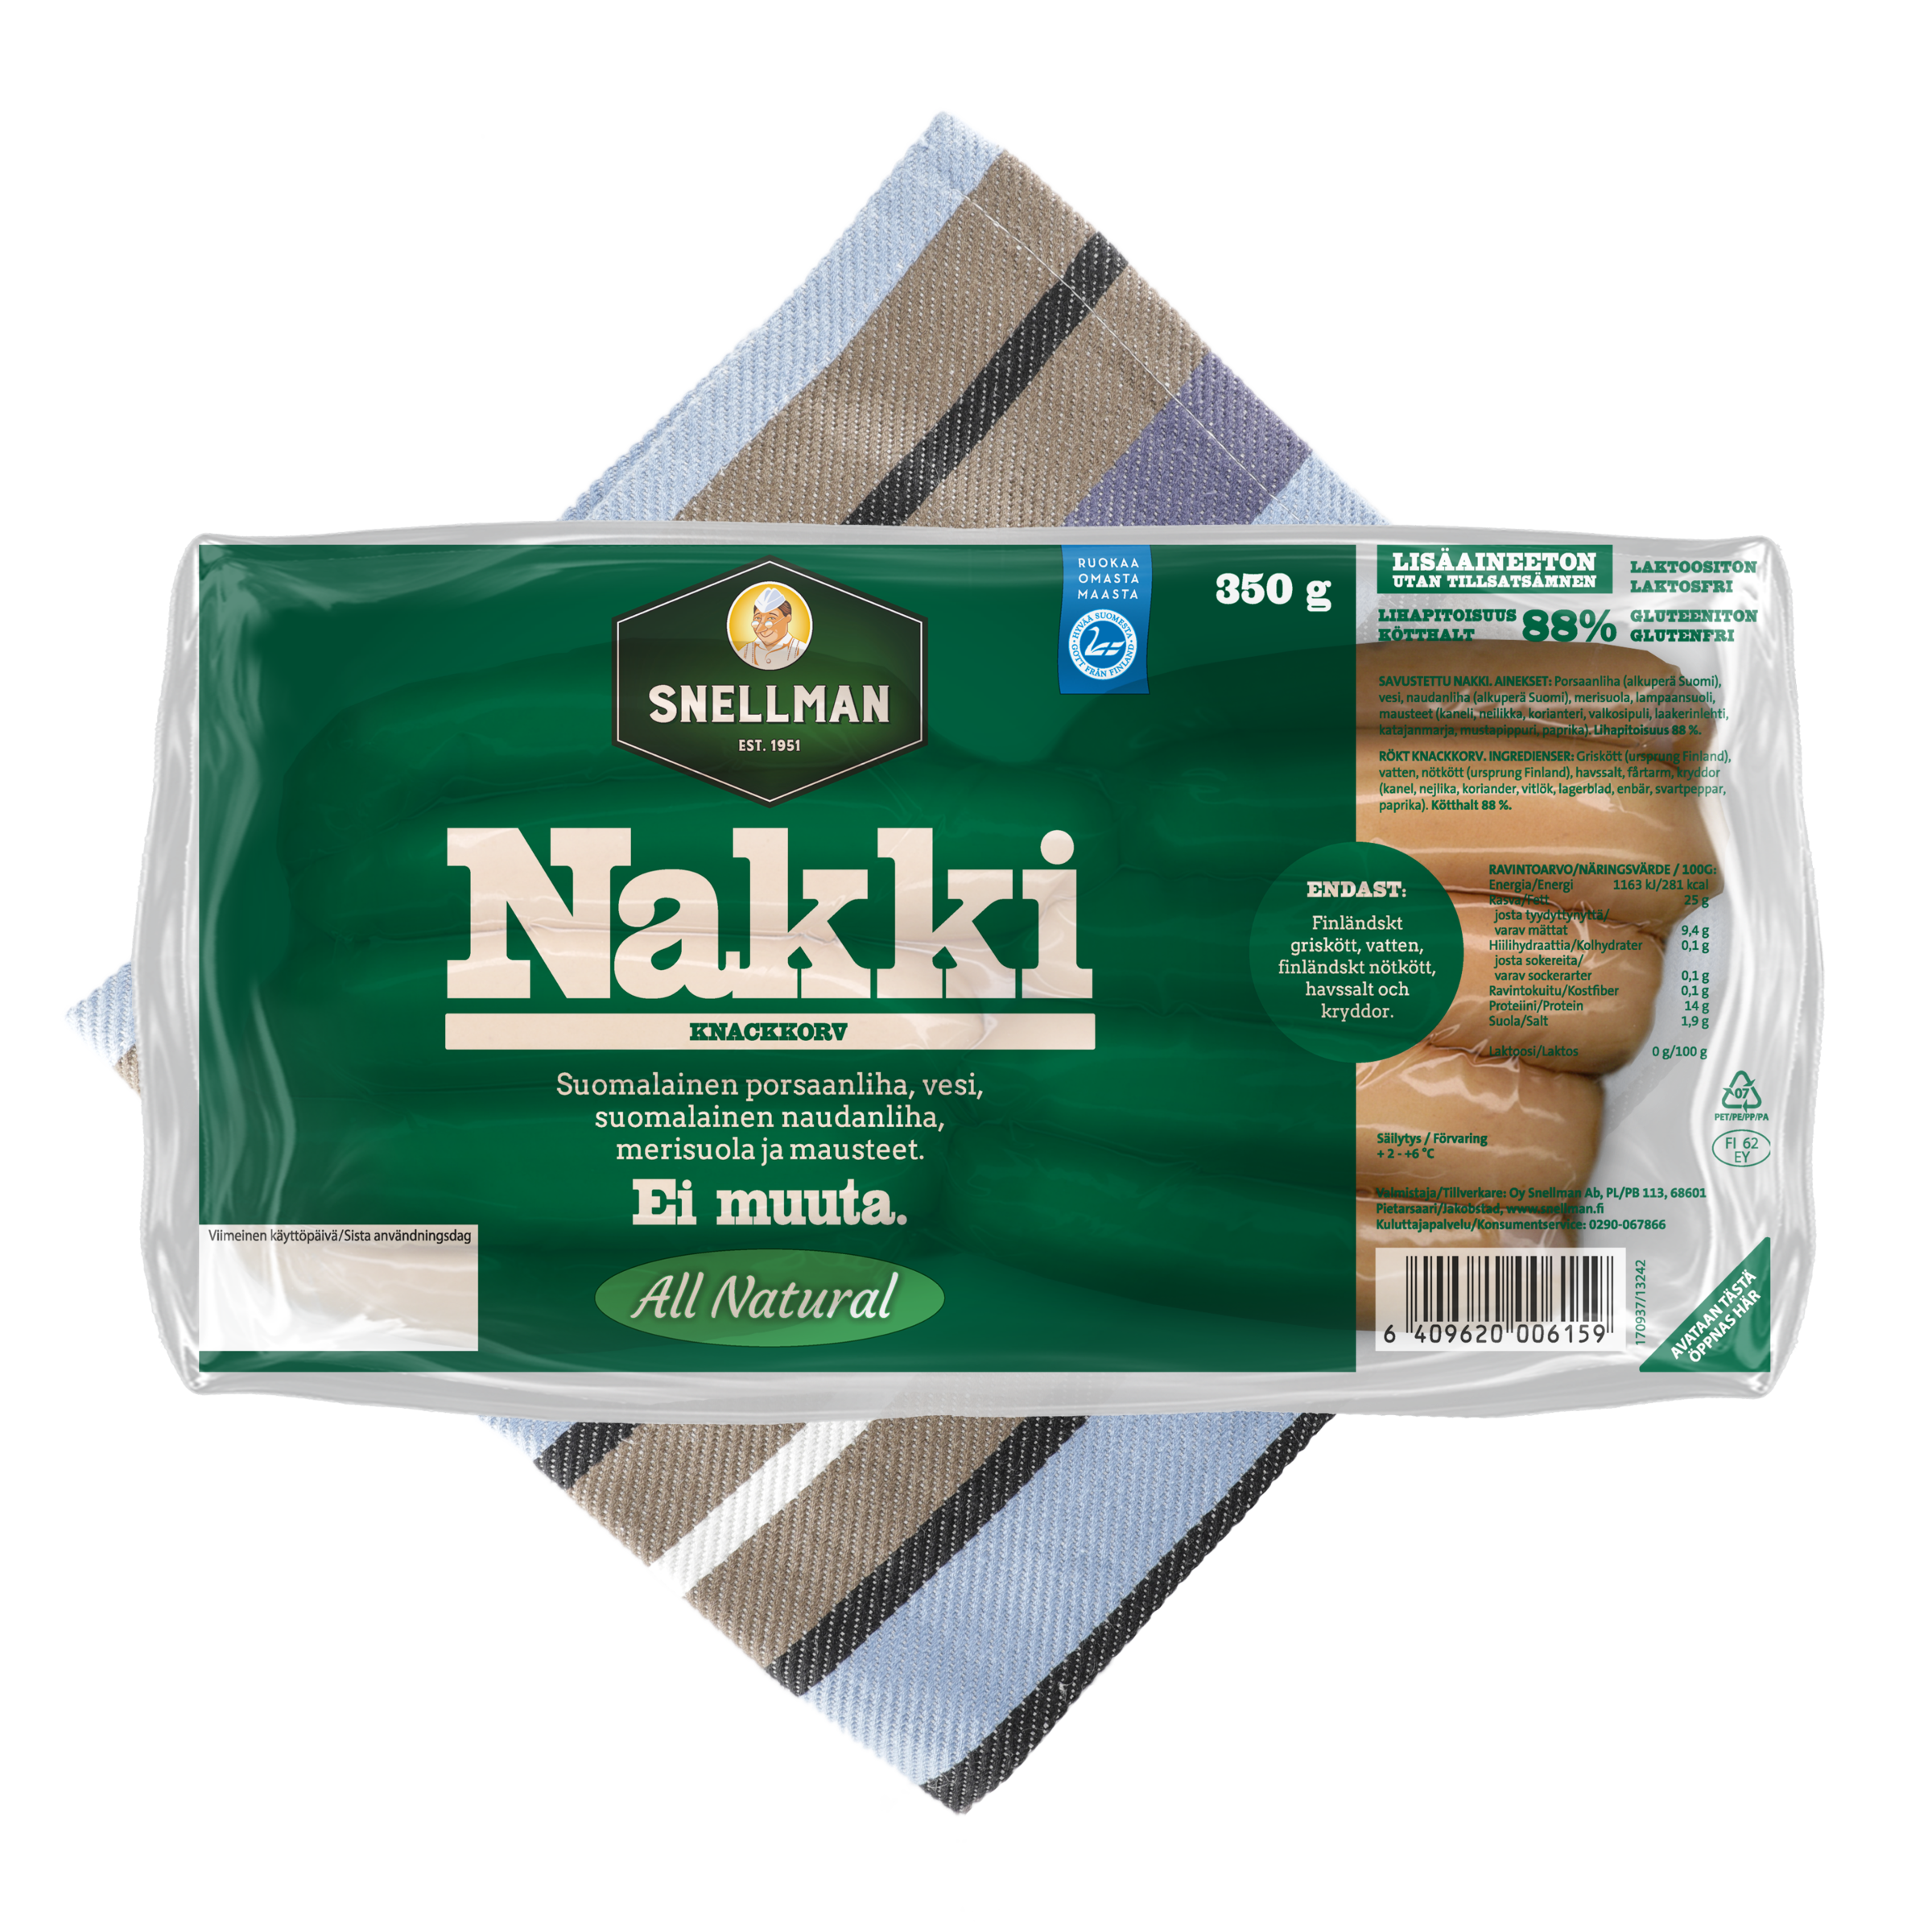 All Natural Nakki 4